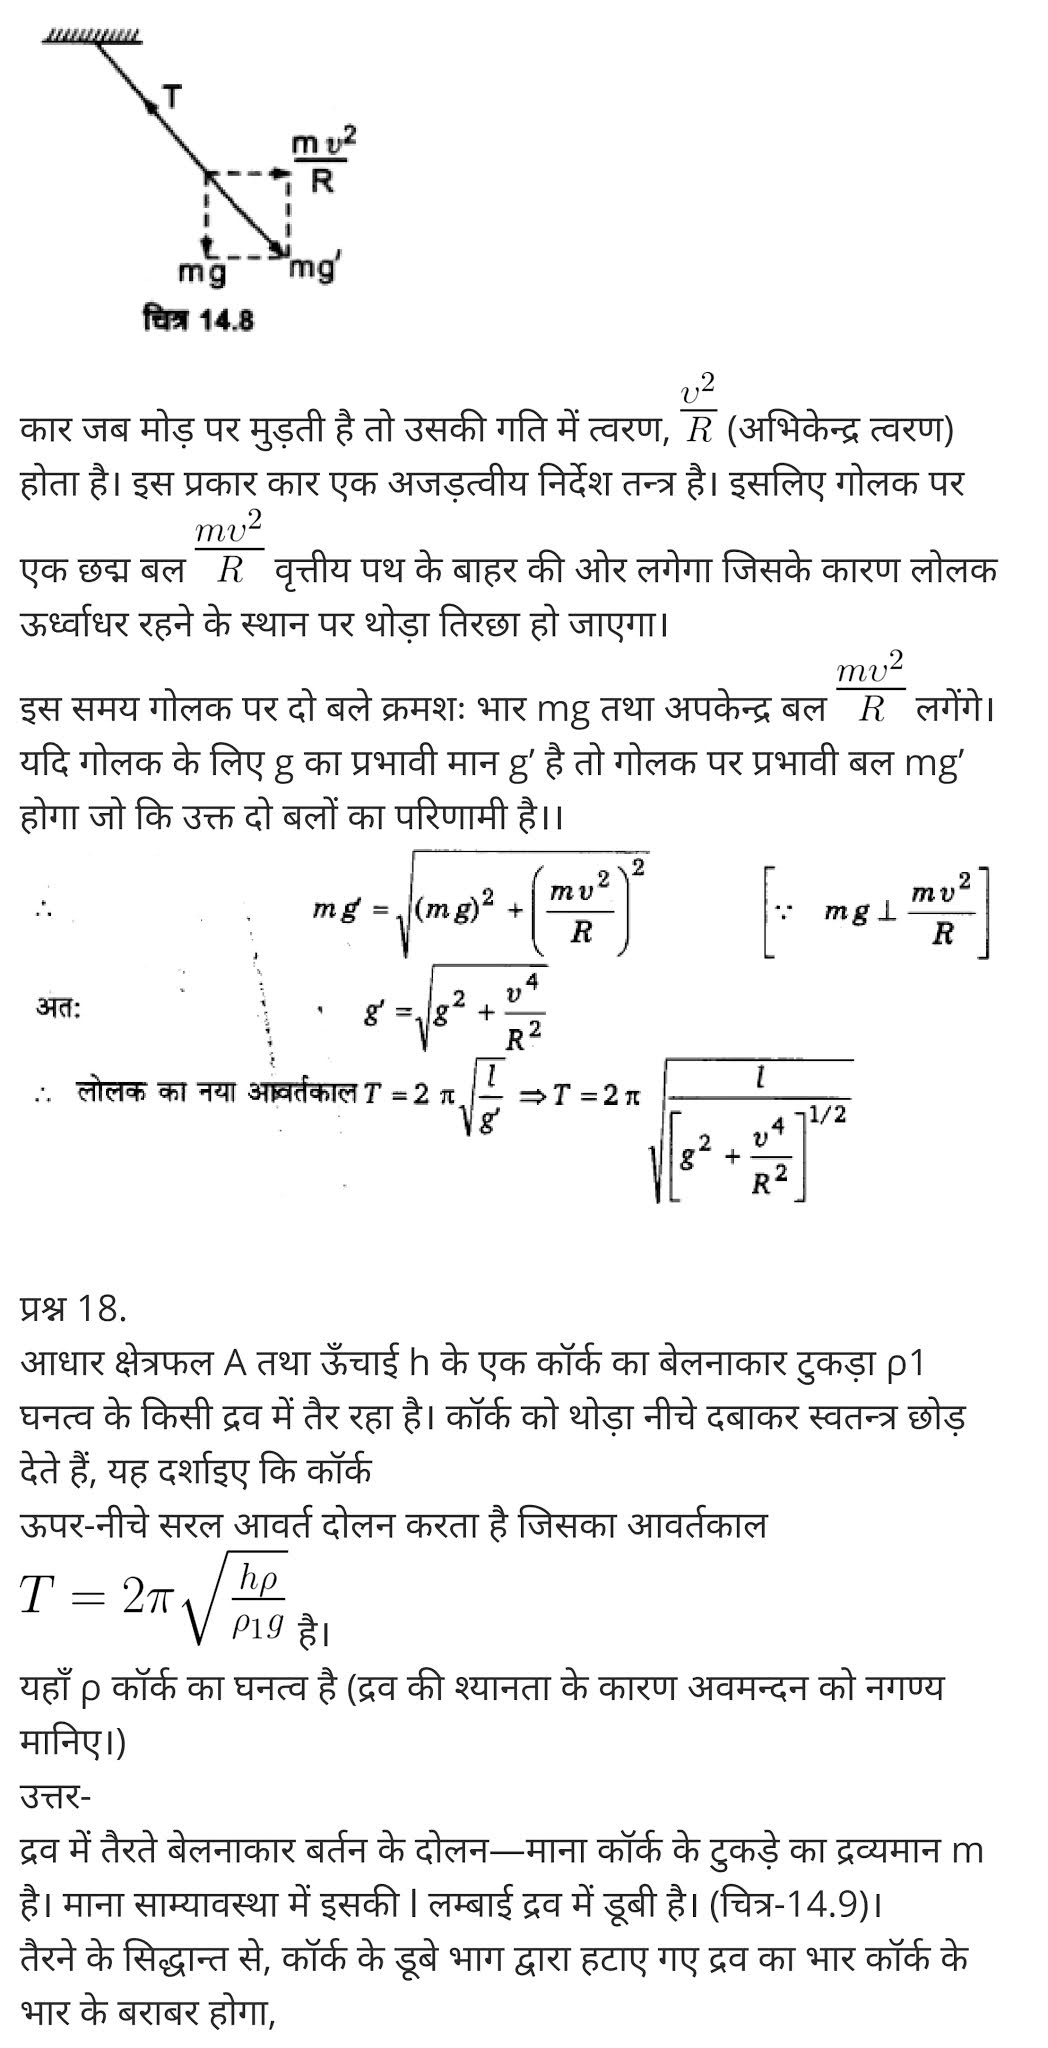 दोलन,  दोलन क्या है,  दोलन की परिभाषा,  अवमंदित दोलन,  दोलन सिद्धांत क्या है,  दोलन के प्रकार,  दोलन गति in english,  दोलन काल,  प्रणोदित दोलन,  Oscillations,  oscillation physics,  oscillation definition physics,  oscillation meaning in hindi,  types of oscillation,  oscillation formula,  damped oscillation,  oscillation waves,  what is oscillation in sound,   class 11 physics Chapter 14,  class 11 physics chapter 14 ncert solutions in hindi,  class 11 physics chapter 14 notes in hindi,  class 11 physics chapter 14 question answer,  class 11 physics chapter 14 notes,  11 class physics chapter 14 in hindi,  class 11 physics chapter 14 in hindi,  class 11 physics chapter 14 important questions in hindi,  class 11 physics  notes in hindi,   class 11 physics chapter 14 test,  class 11 physics chapter 14 pdf,  class 11 physics chapter 14 notes pdf,  class 11 physics chapter 14 exercise solutions,  class 11 physics chapter 14, class 11 physics chapter 14 notes study rankers,  class 11 physics chapter 14 notes,  class 11 physics notes,   physics  class 11 notes pdf,  physics class 11 notes 2021 ncert,  physics class 11 pdf,  physics  book,  physics quiz class 11,   11th physics  book up board,  up board 11th physics notes,   कक्षा 11 भौतिक विज्ञान अध्याय 14,  कक्षा 11 भौतिक विज्ञान का अध्याय 14 ncert solution in hindi,  कक्षा 11 भौतिक विज्ञान के अध्याय 14 के नोट्स हिंदी में,  कक्षा 11 का भौतिक विज्ञान अध्याय 14 का प्रश्न उत्तर,  कक्षा 11 भौतिक विज्ञान अध्याय 14 के नोट्स,  11 कक्षा भौतिक विज्ञान अध्याय 14 हिंदी में,  कक्षा 11 भौतिक विज्ञान अध्याय 14 हिंदी में,  कक्षा 11 भौतिक विज्ञान अध्याय 14 महत्वपूर्ण प्रश्न हिंदी में,  कक्षा 11 के भौतिक विज्ञान के नोट्स हिंदी में,  भौतिक विज्ञान कक्षा 11 नोट्स pdf,  भौतिक विज्ञान कक्षा 11 नोट्स 2021 ncert,  भौतिक विज्ञान कक्षा 11 pdf,  भौतिक विज्ञान पुस्तक,  भौतिक विज्ञान की बुक,  भौतिक विज्ञान प्रश्नोत्तरी class 11, 11 वीं भौतिक विज्ञान पुस्तक up board,  बिहार बोर्ड 11पुस्तक वीं भौतिक विज्ञान नोट्स,